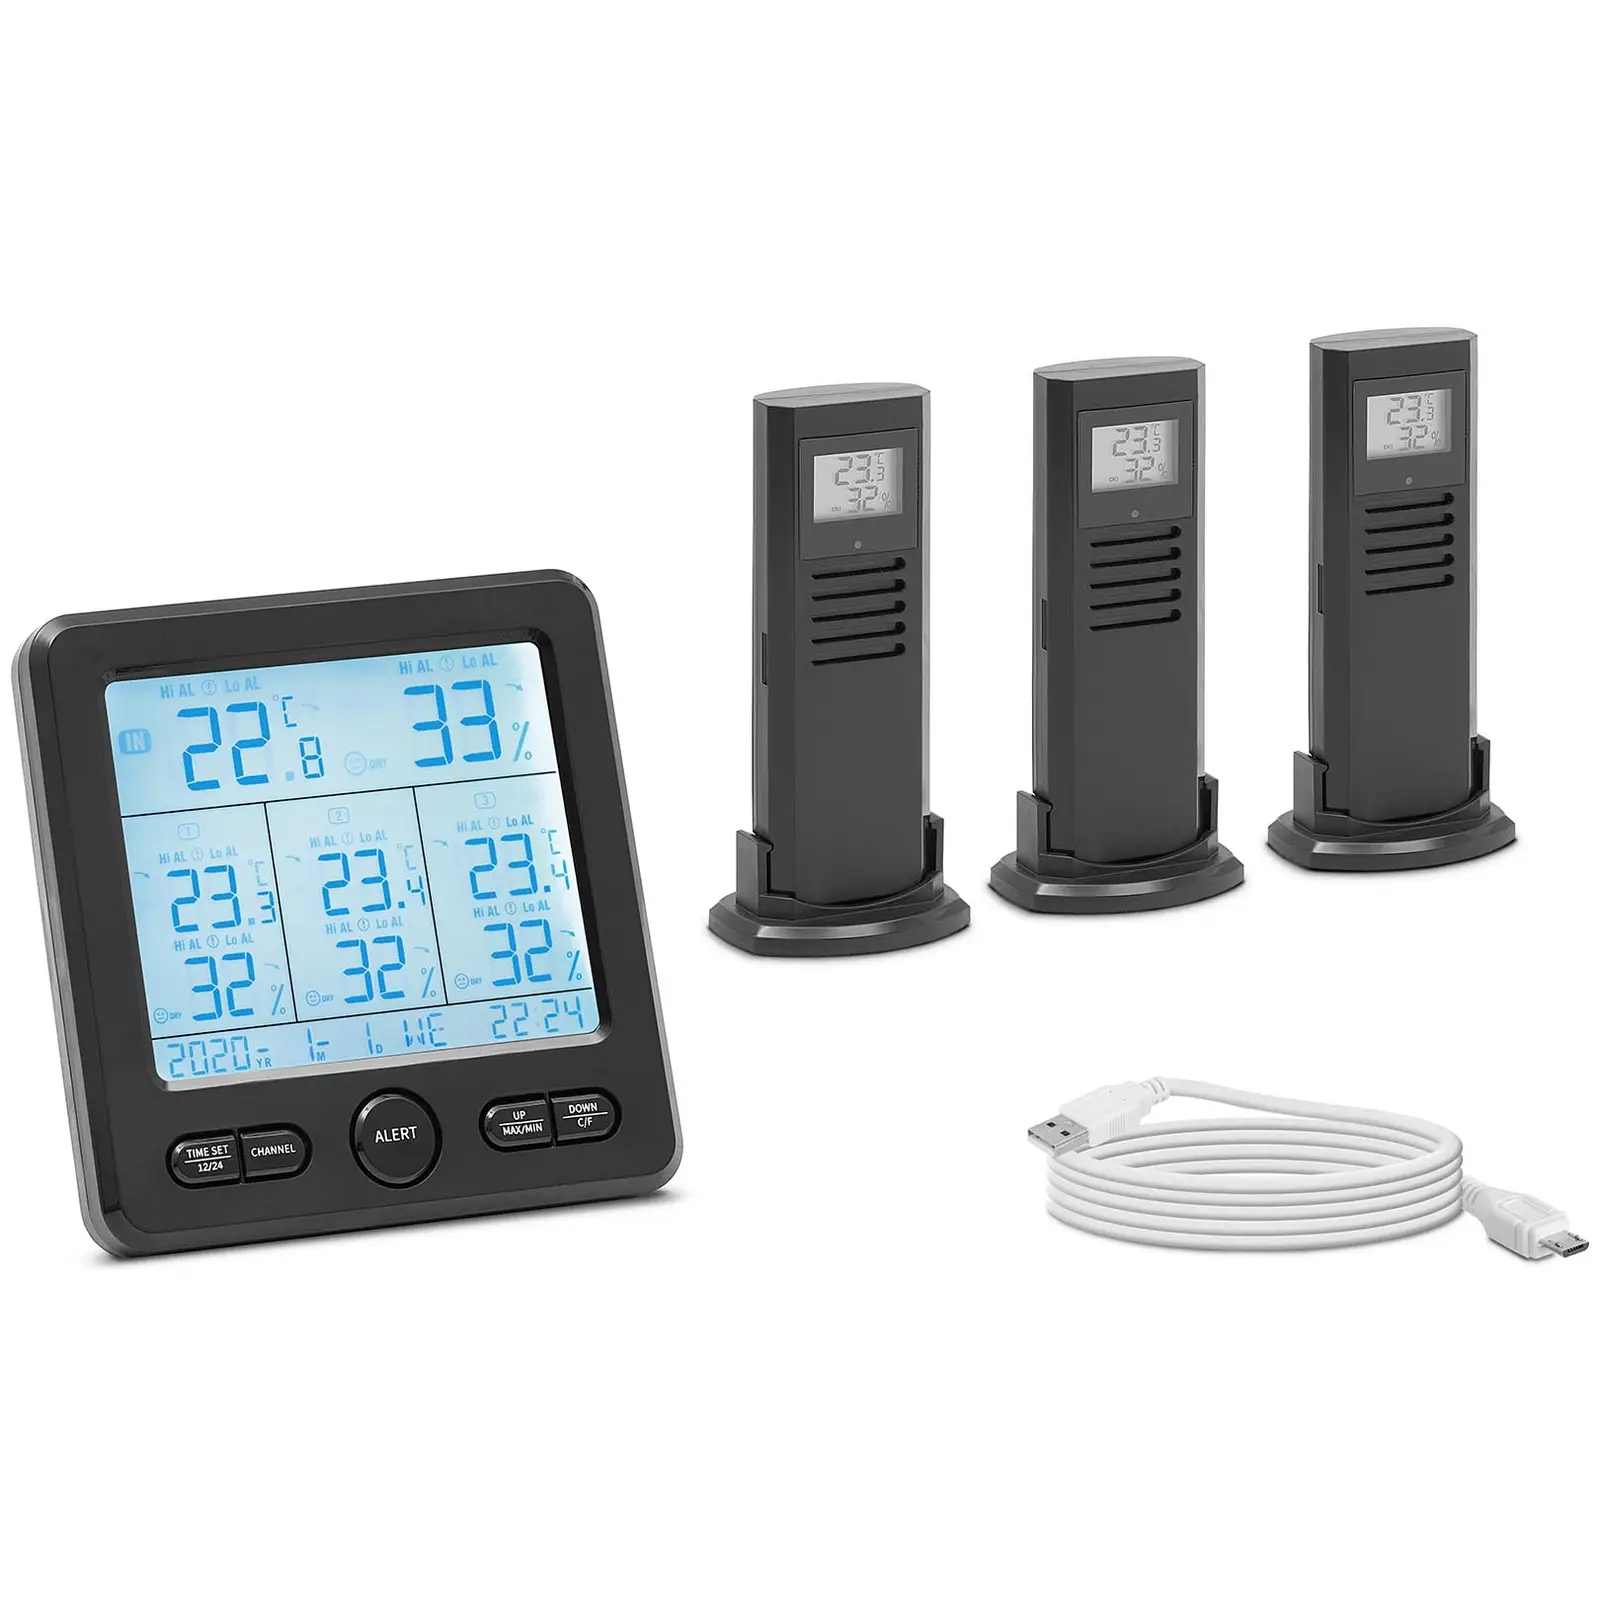 Väderstation - Trådlös - LCD - 3 sensorer